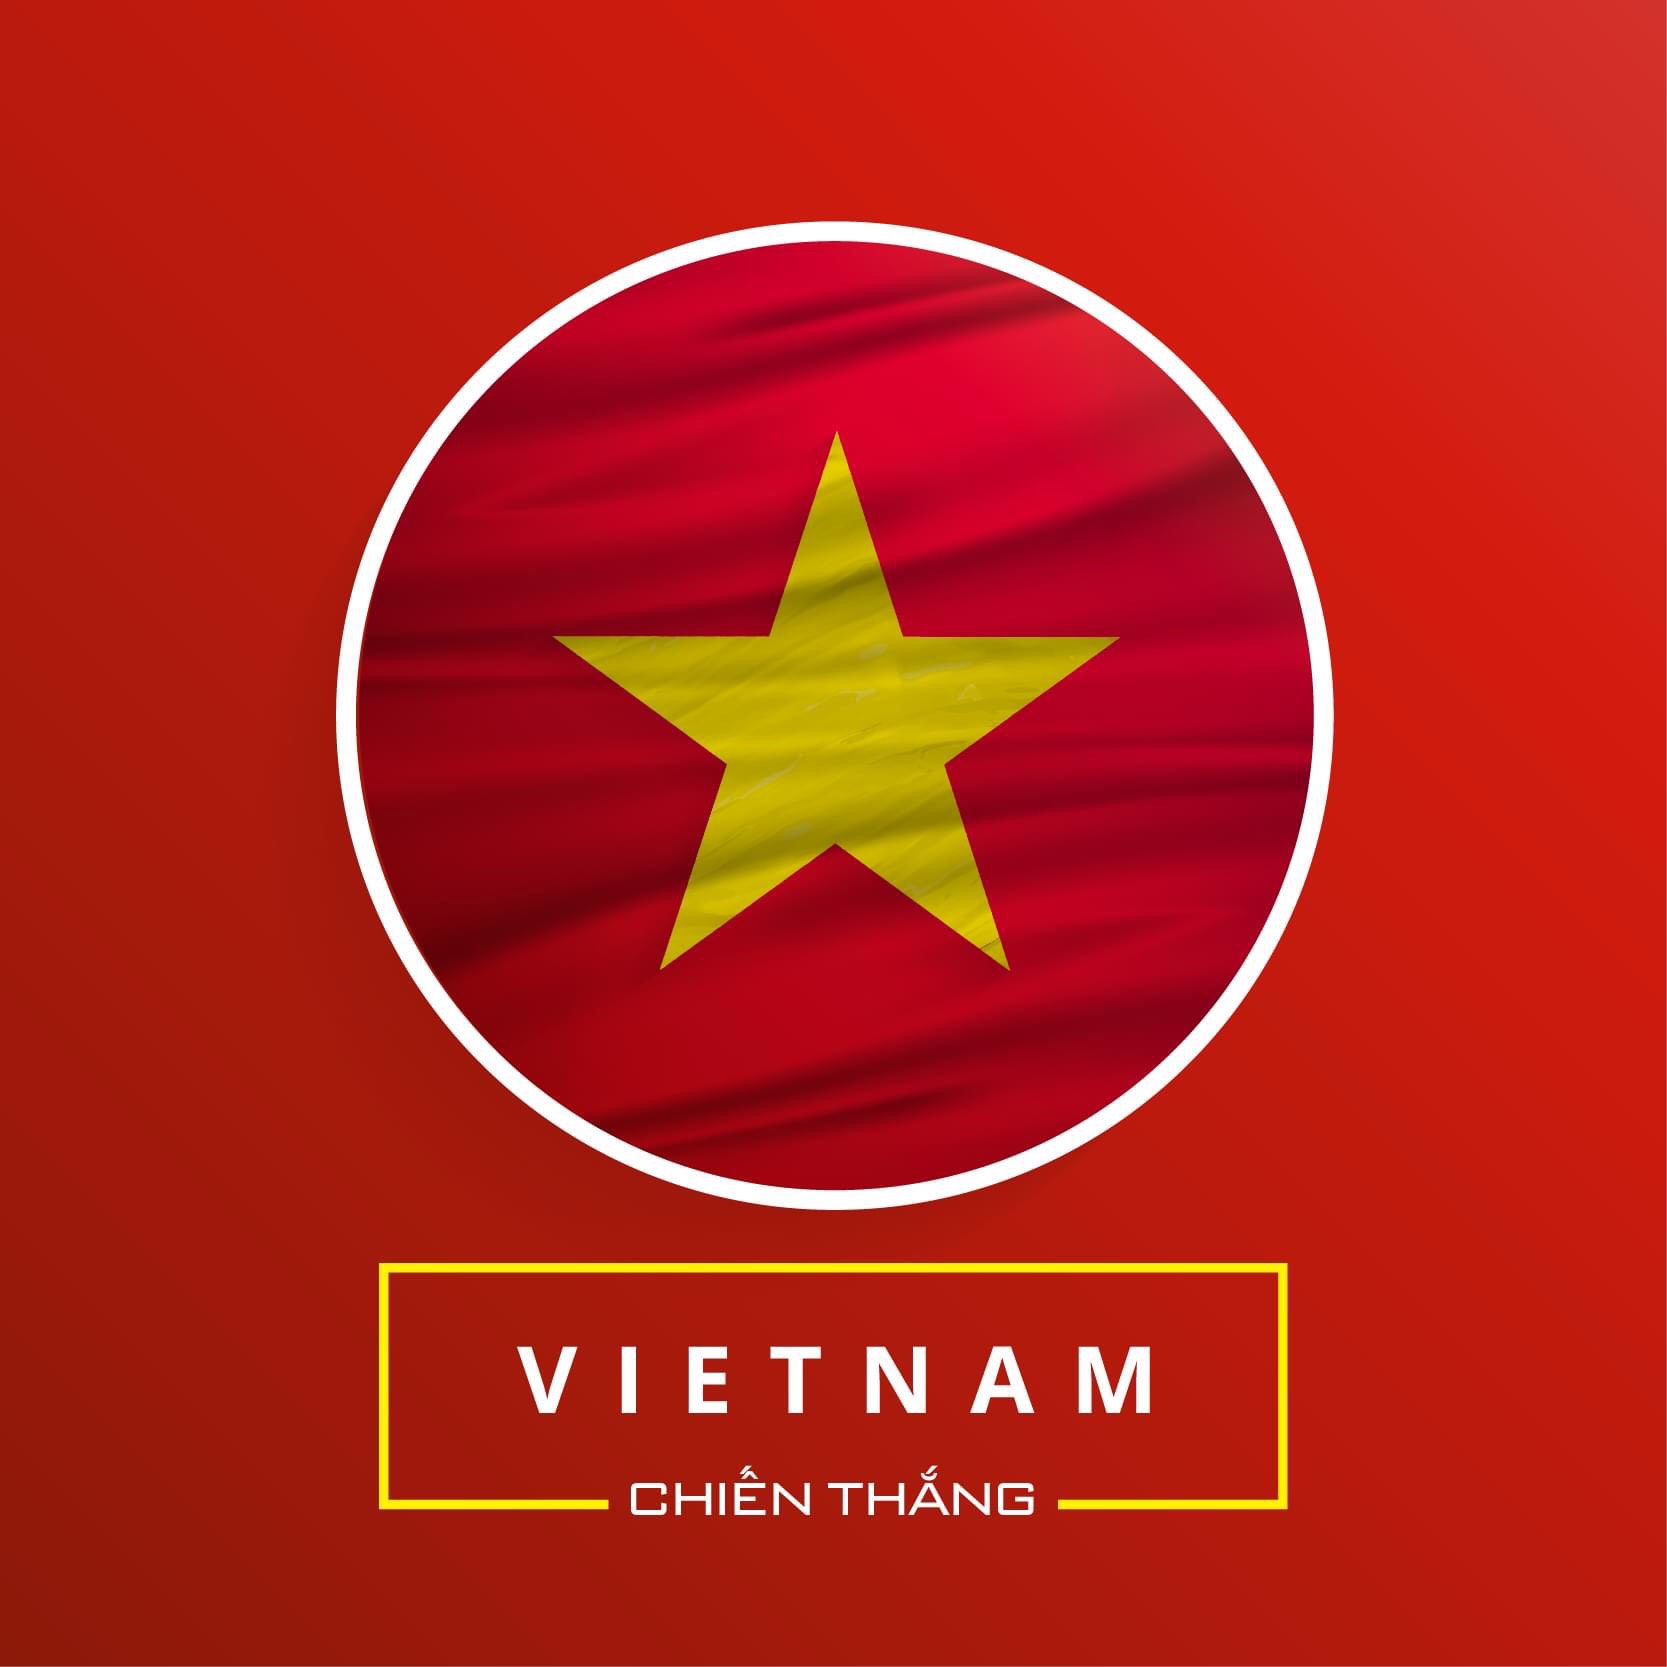 101 Hình Ảnh Avatar Nam Đẹp Cực Cool MÊ RỒI CHỨ GÌ  Đại Việt Sài Gòn